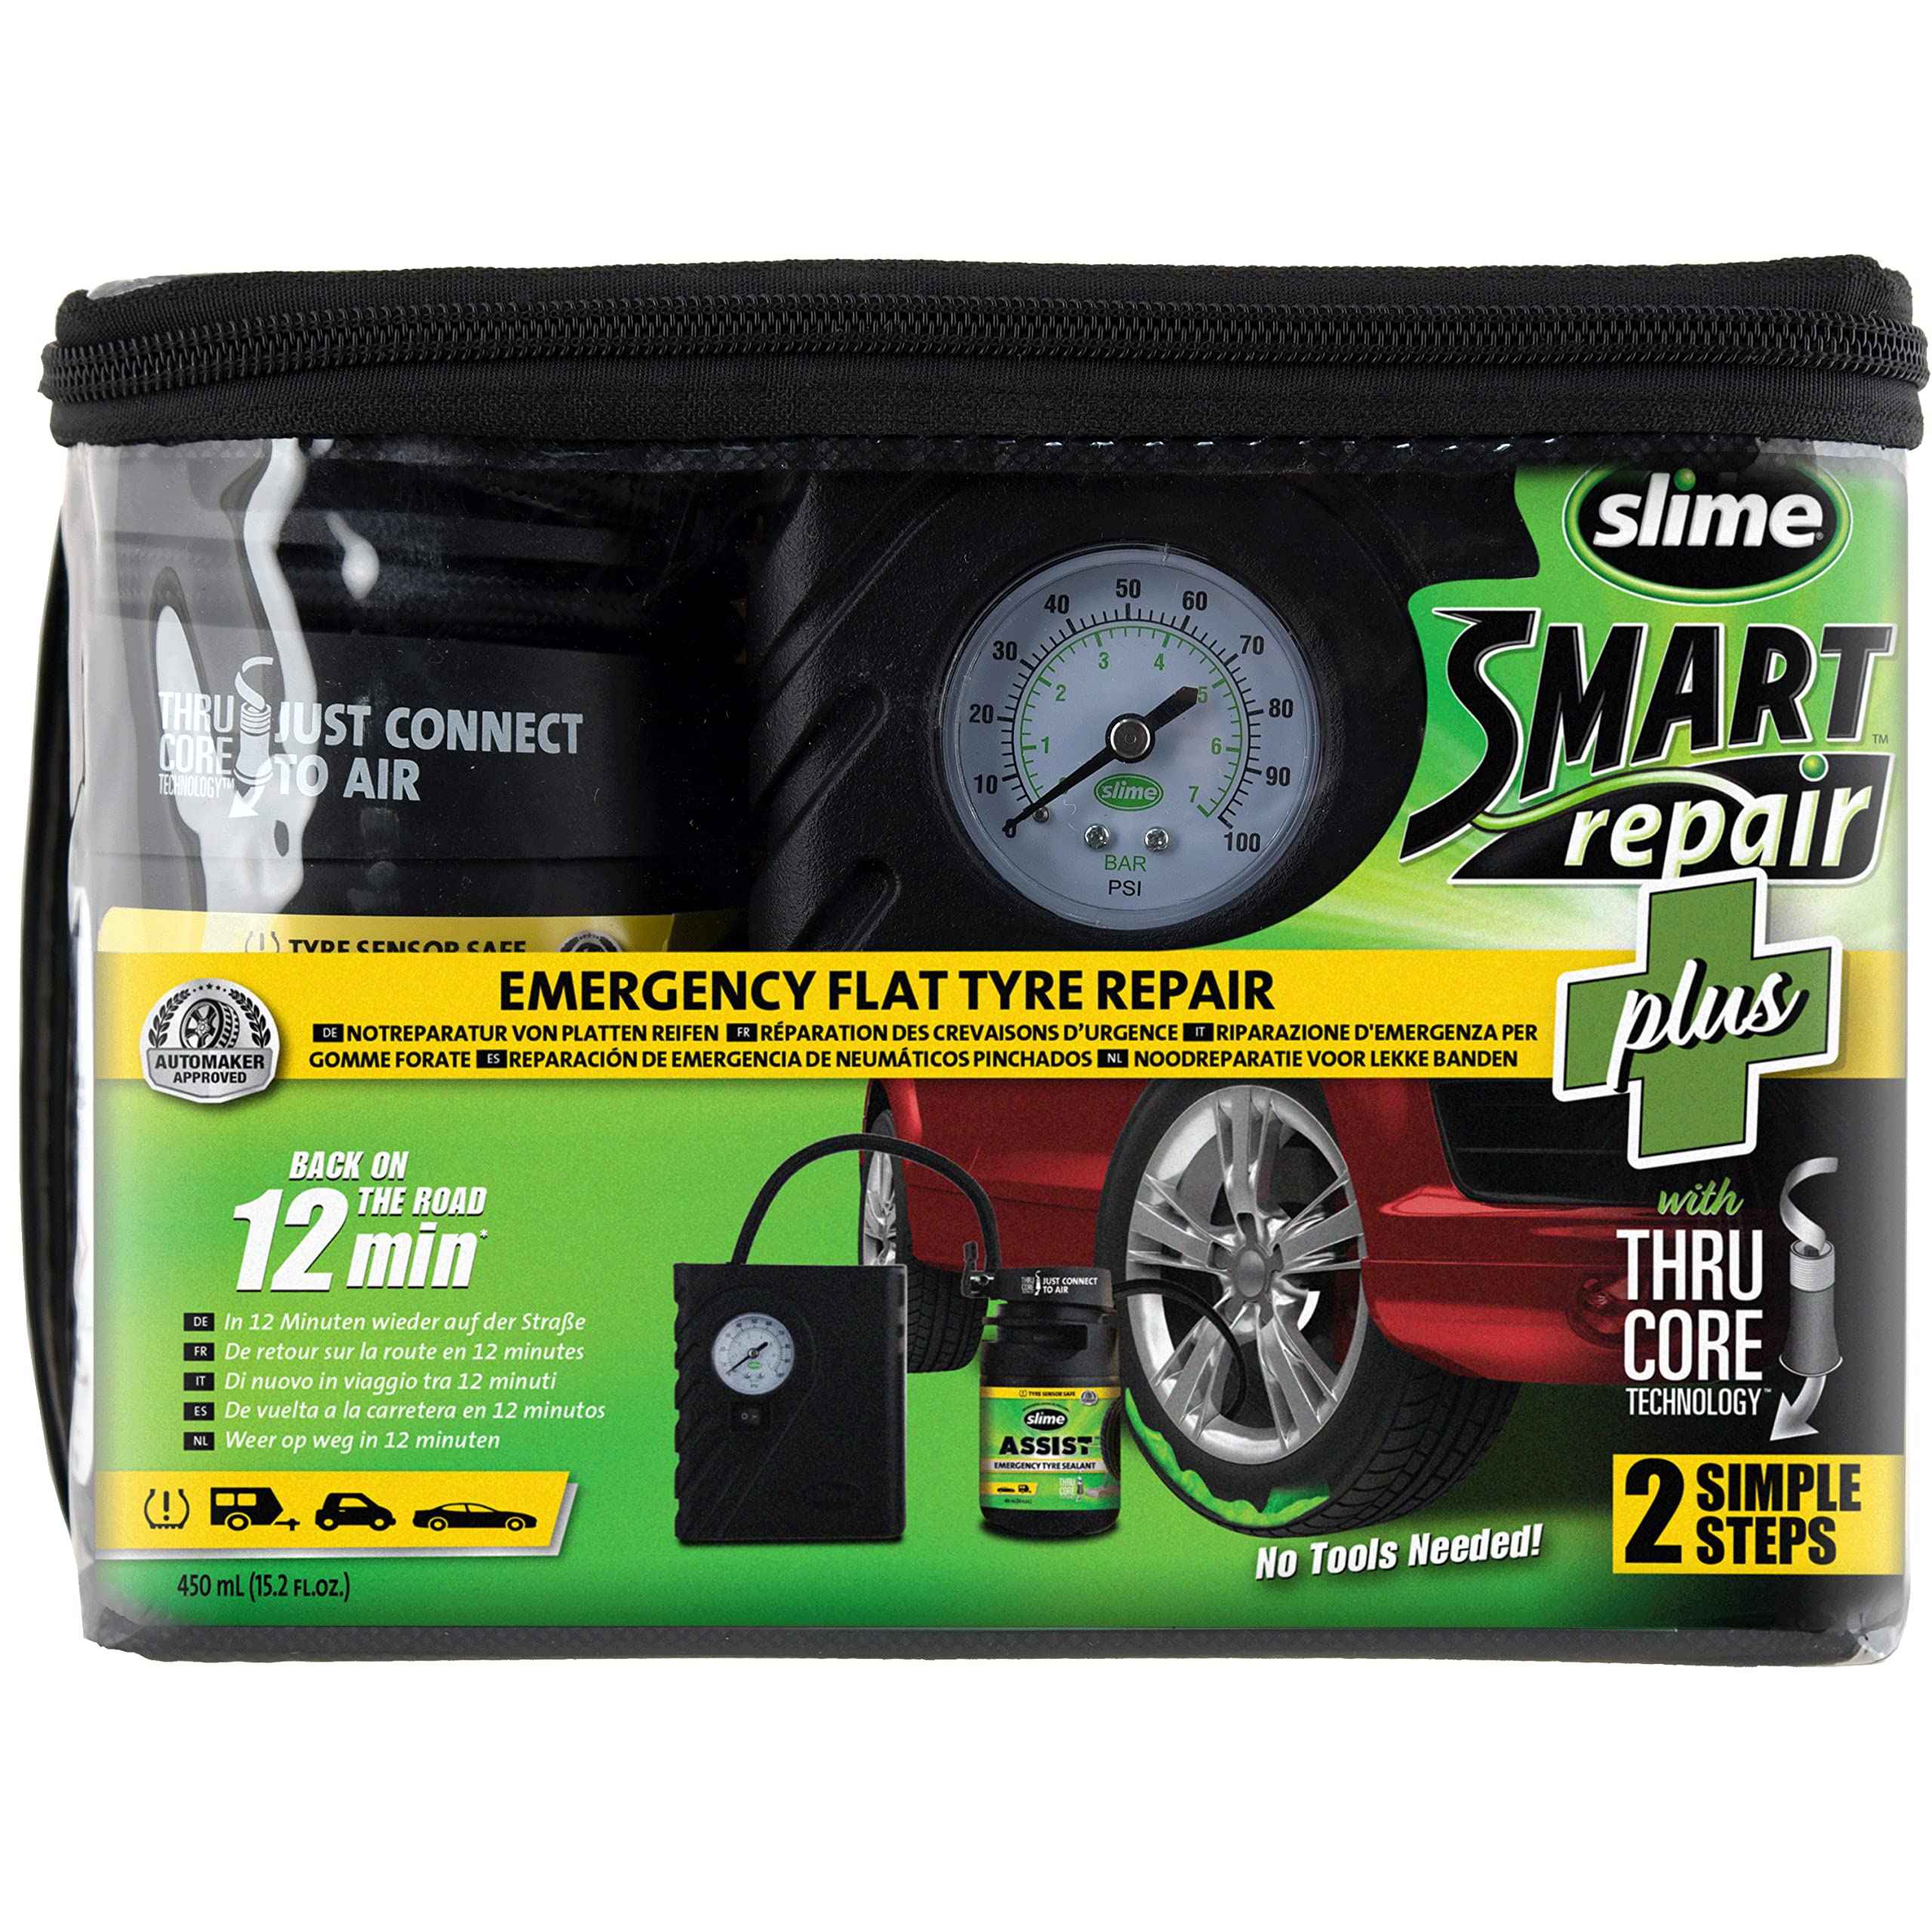 Slime 50138-51 Reifenpannen-Reparatur, Smart Repair Plus, Autoreifen-Notfallausrüstung, enthält Dichtmittel, geeignet für Autos und sonstige Autobahn-Fahrzeuge, Reparatur in 12 Min